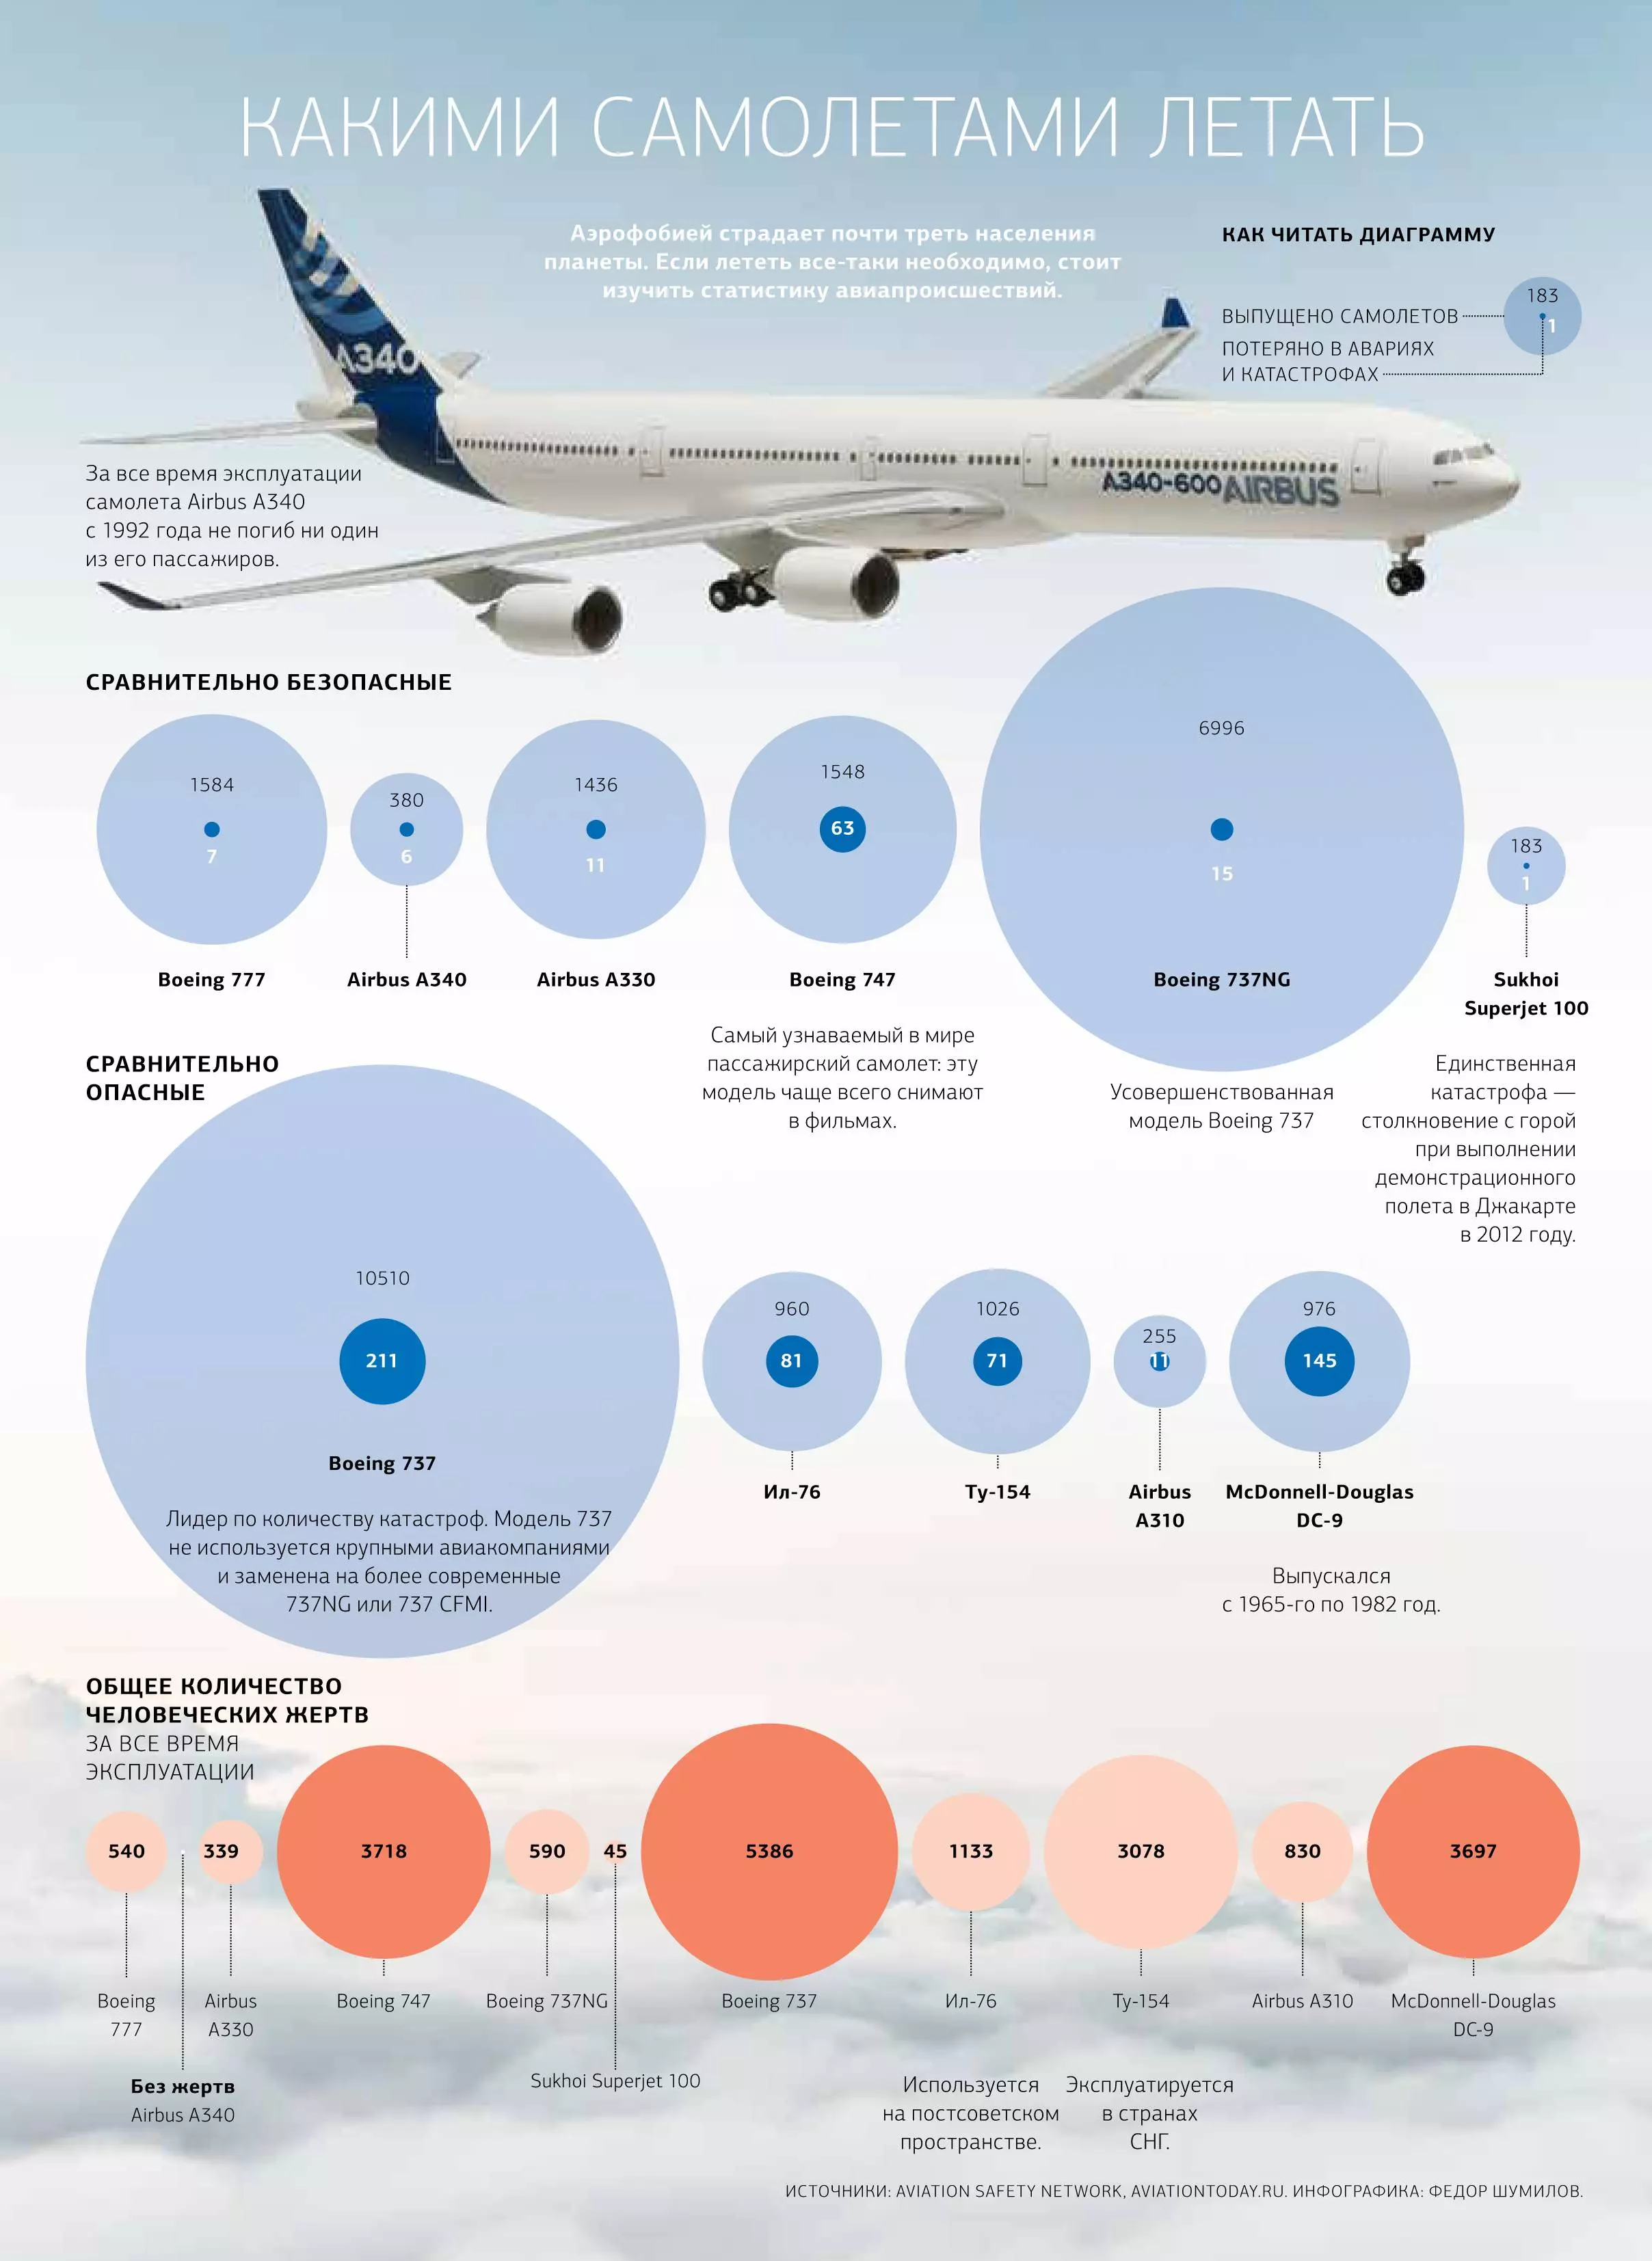 Какой самолет самый надежный и безопасный: рейтинг безопасности